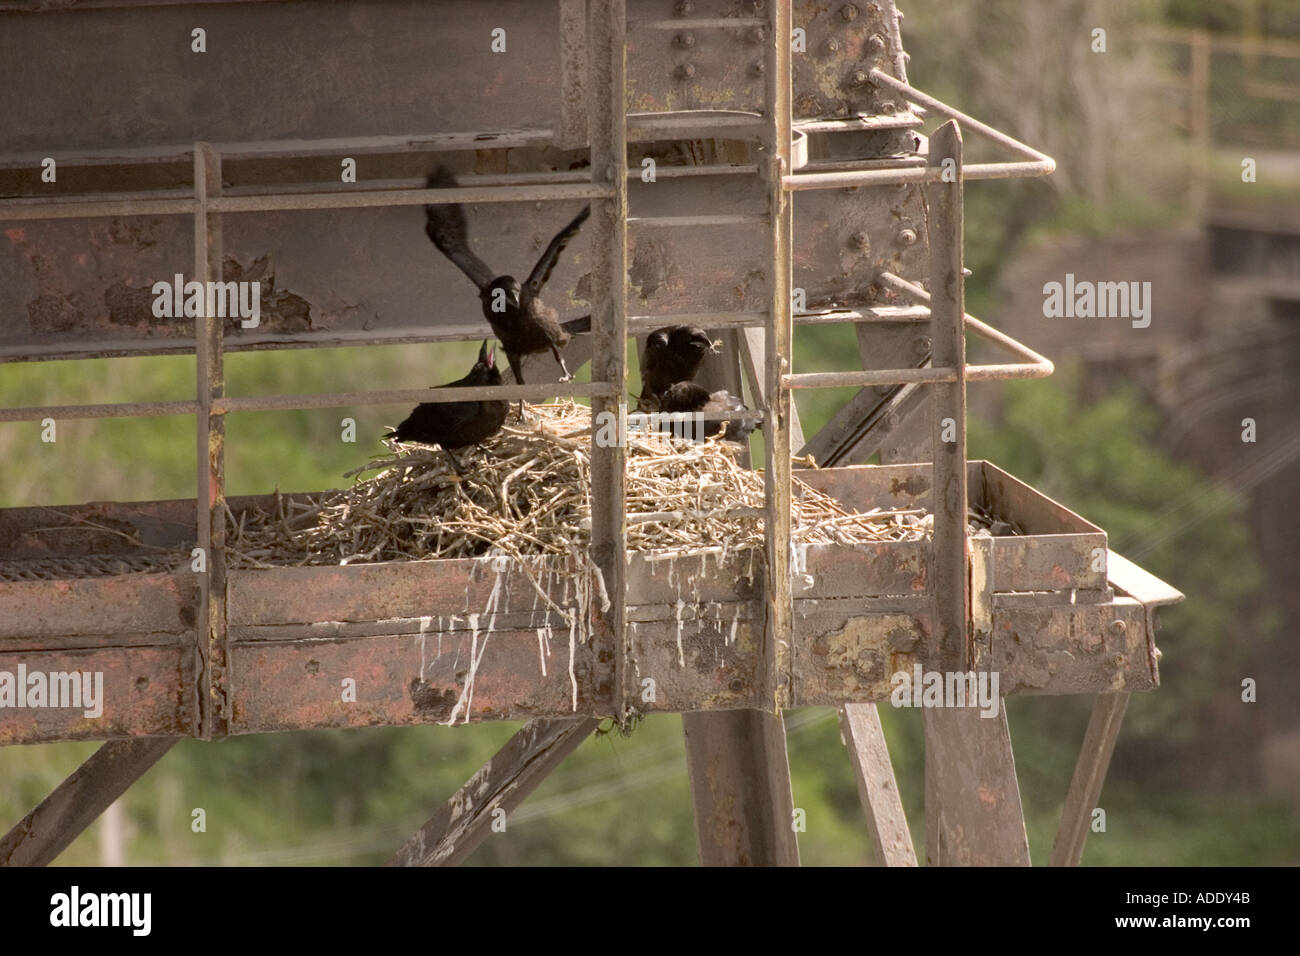 Junge ravens im Nest an der Spitze der Chemiefabrik Brunner Mond Northwich Cheshire Stockfoto